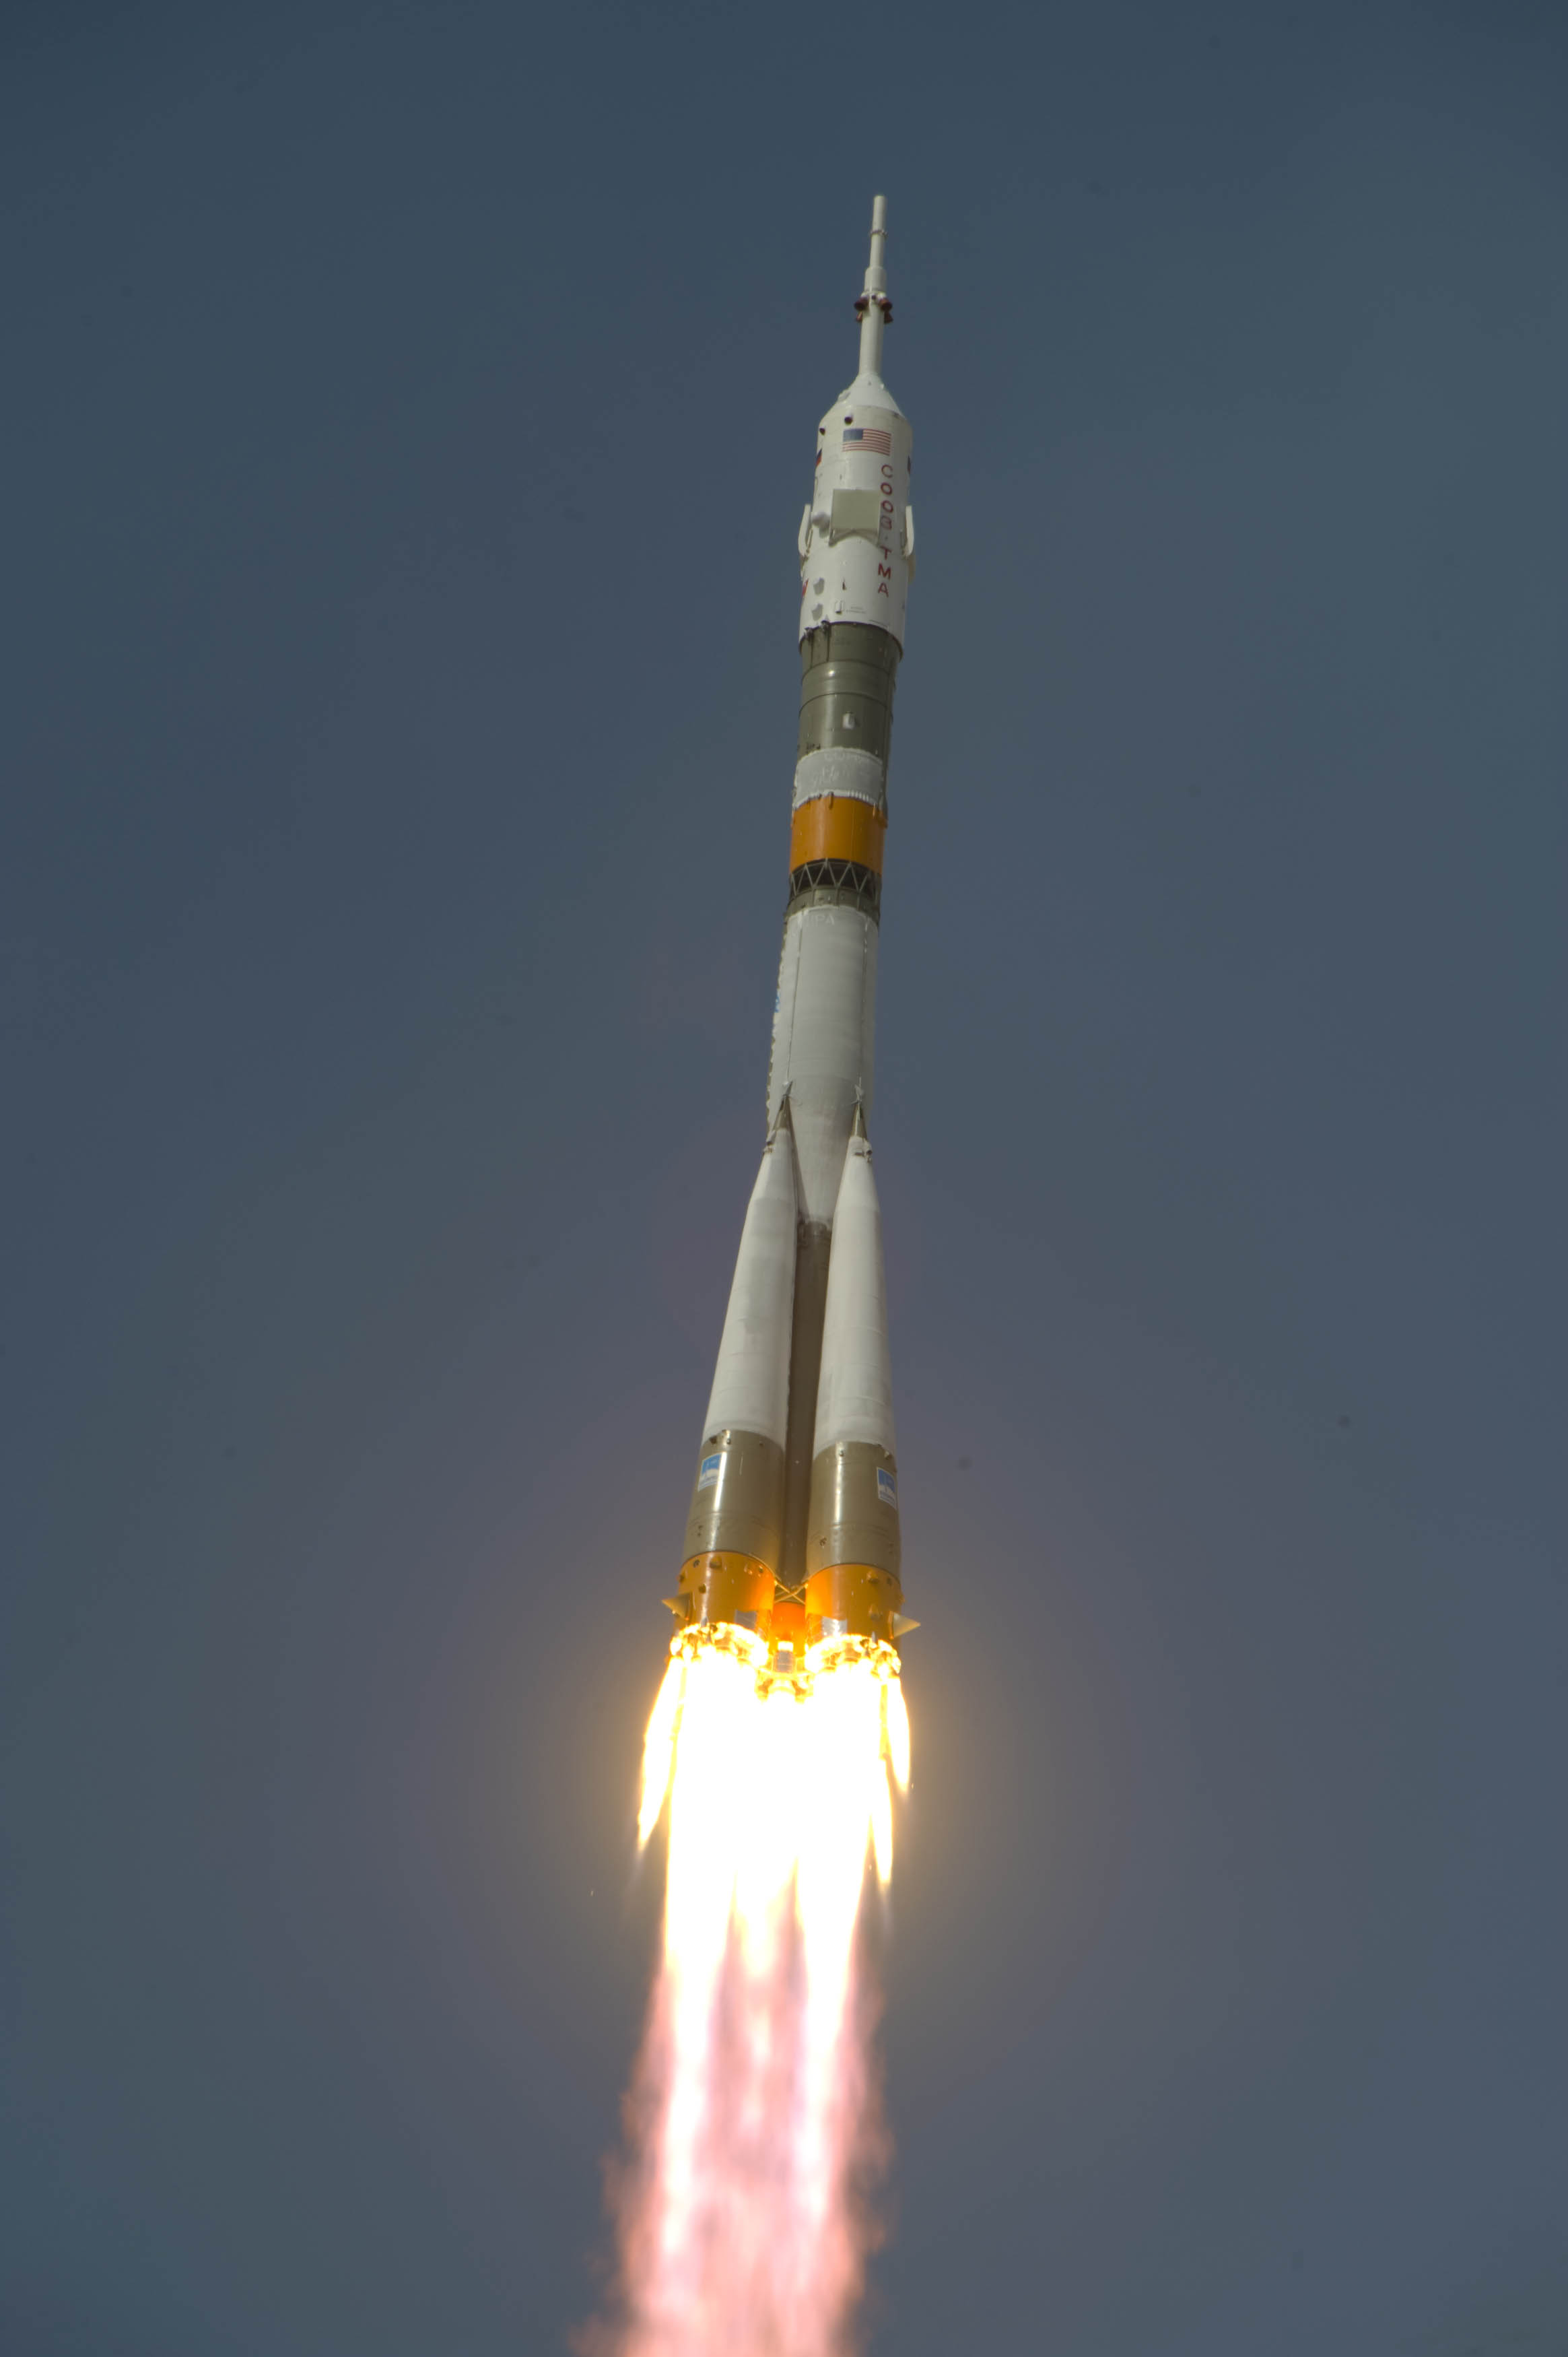 Фото ракеты гагарина. Ракета Юрия Гагарина Восток-1. Восток-1 космический корабль Гагарин. Ракетоноситель Гагарина. Байконур Восток 1.